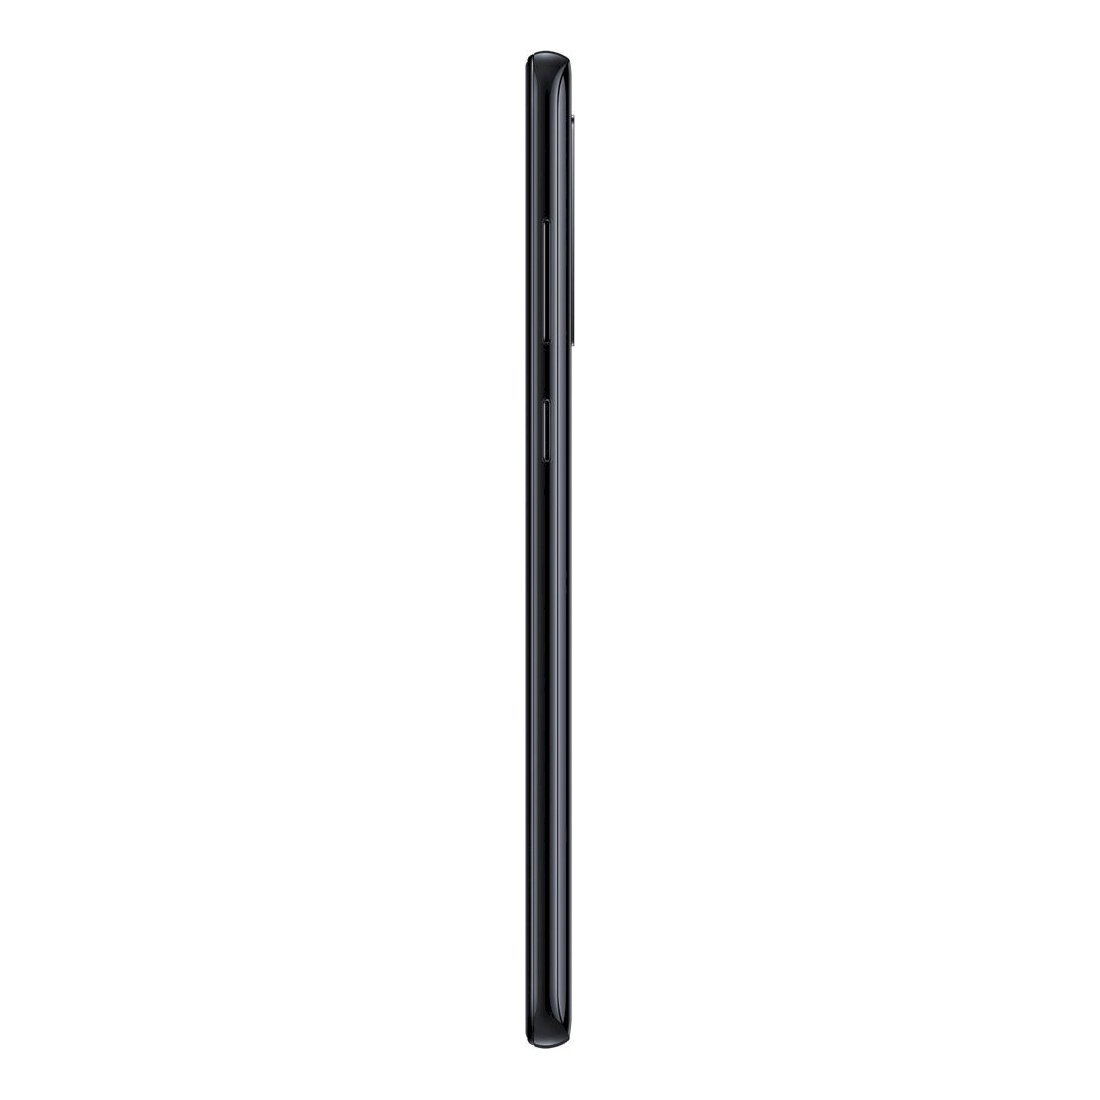 Samsung Galaxy A9 Dual black (128GB-6GB)